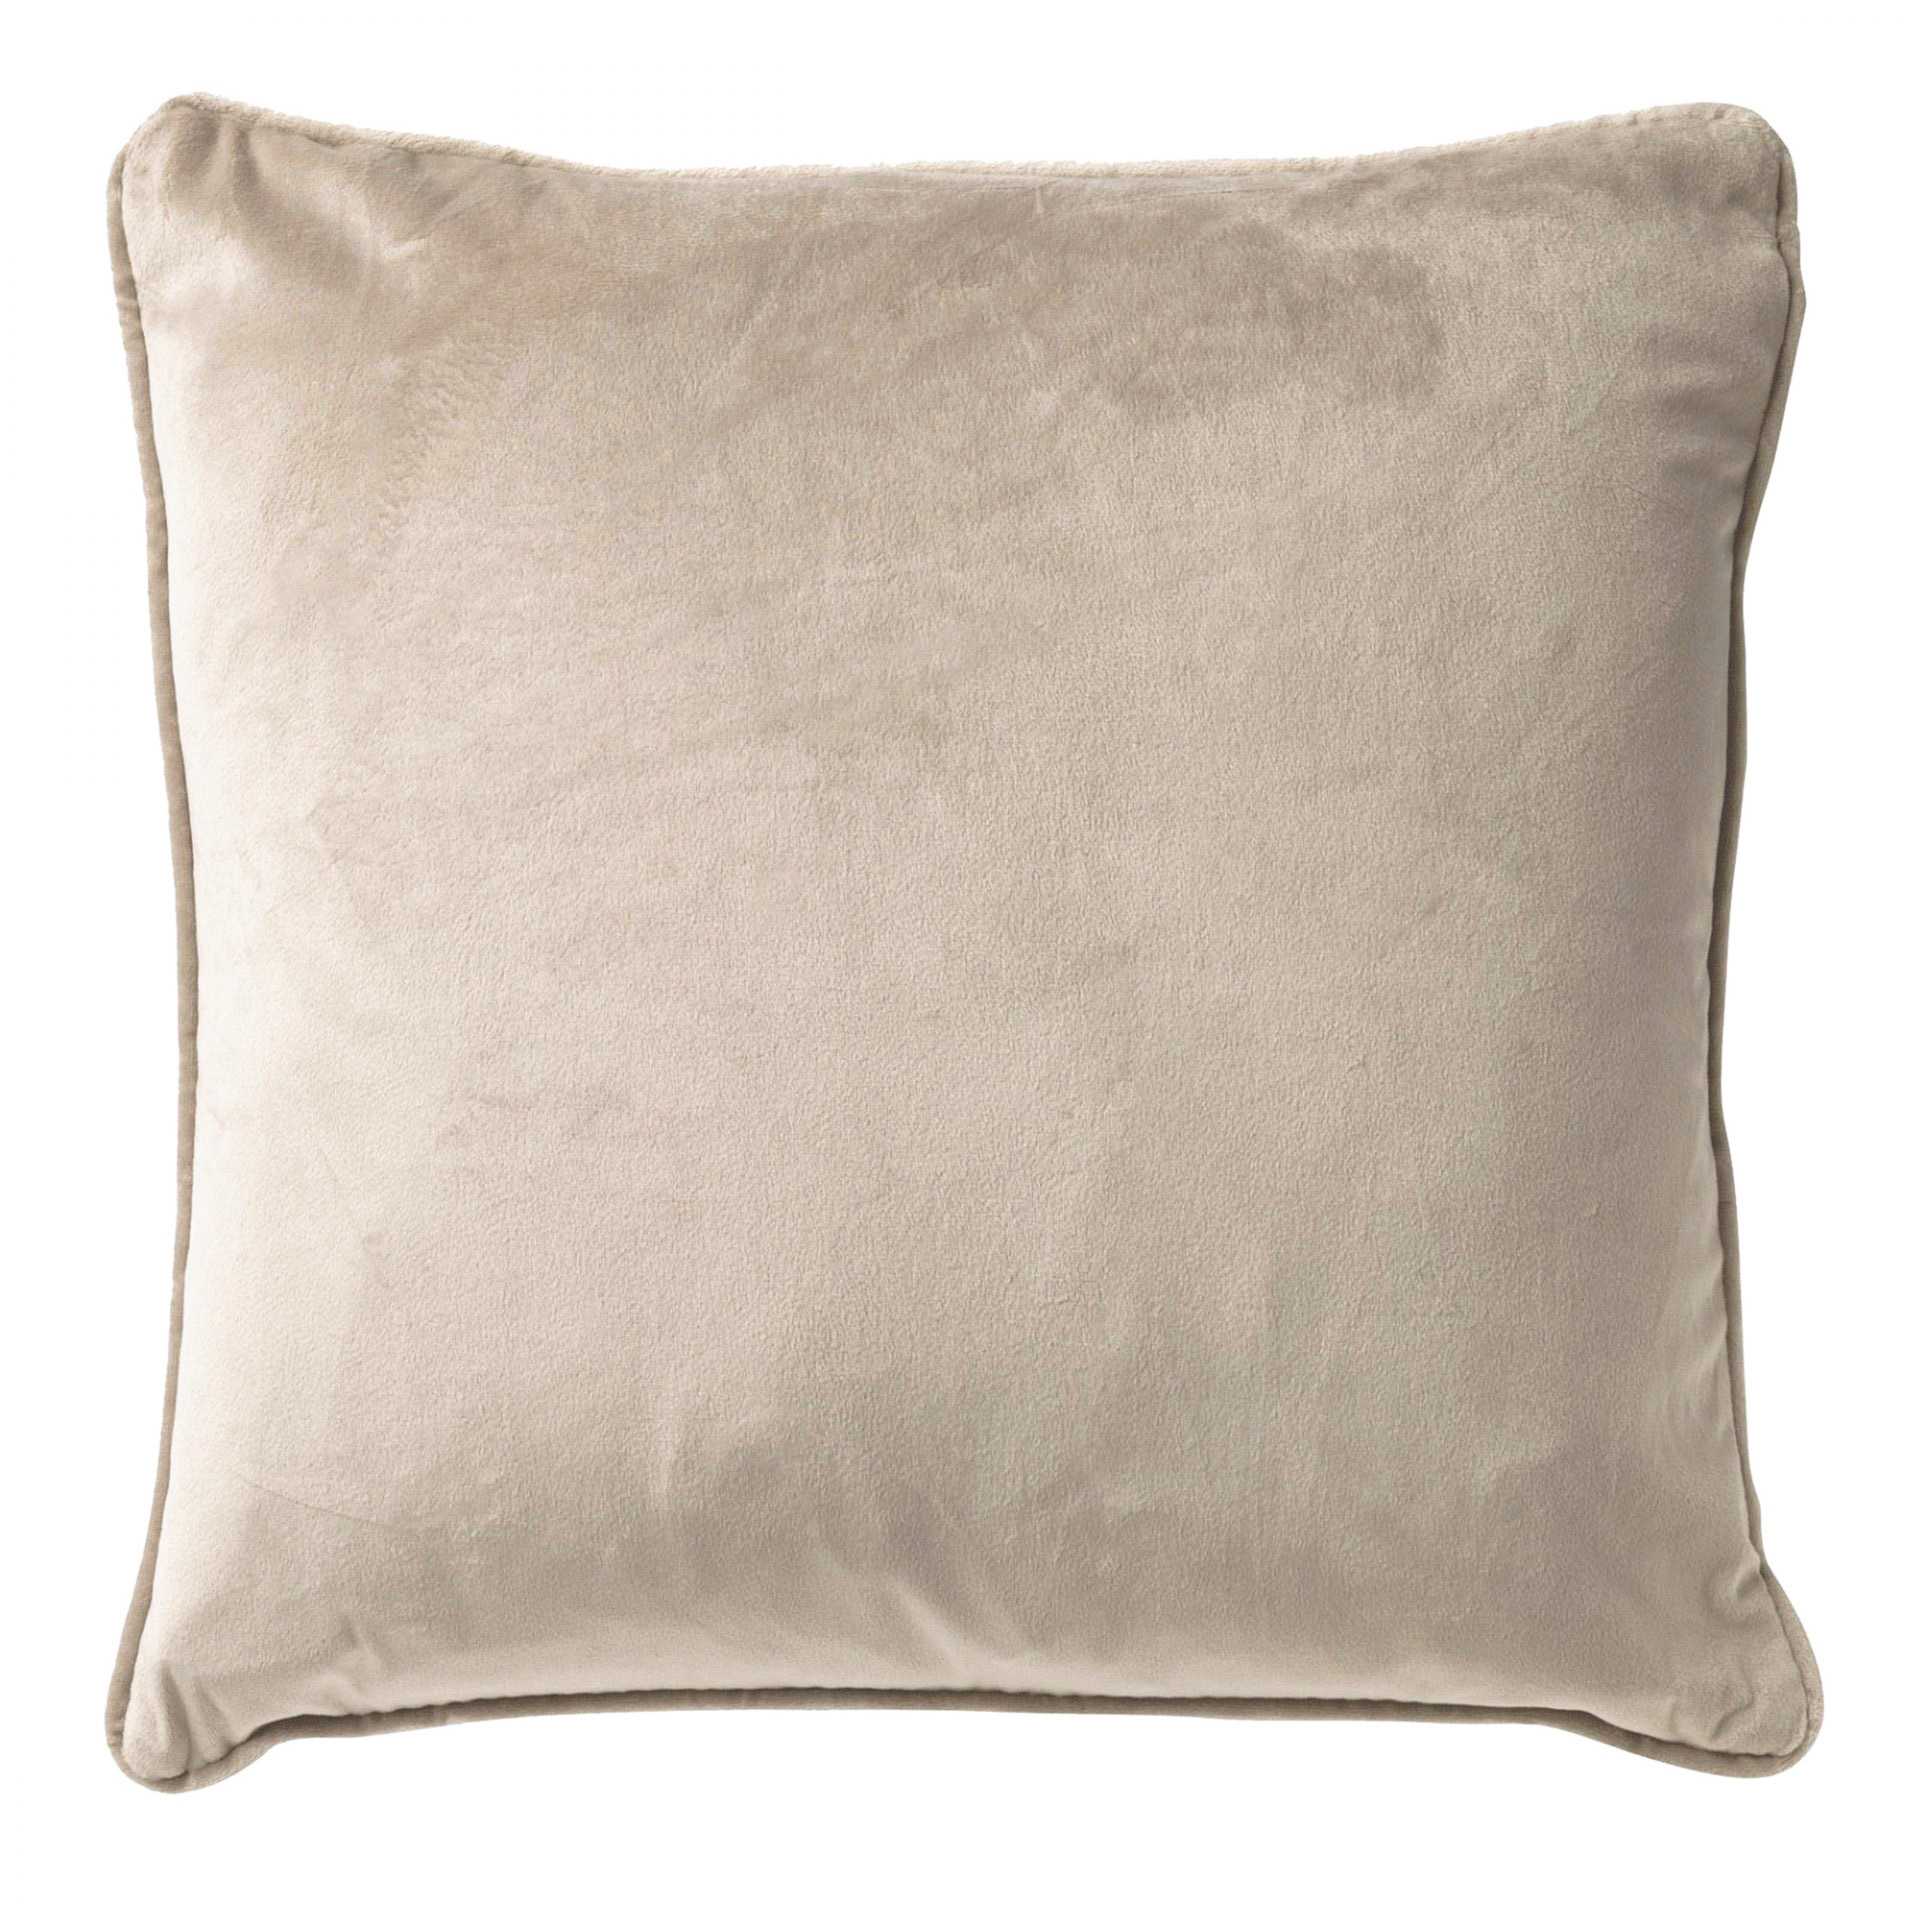 FINN - Cushion 45x45 cm Pumice Stone - beige